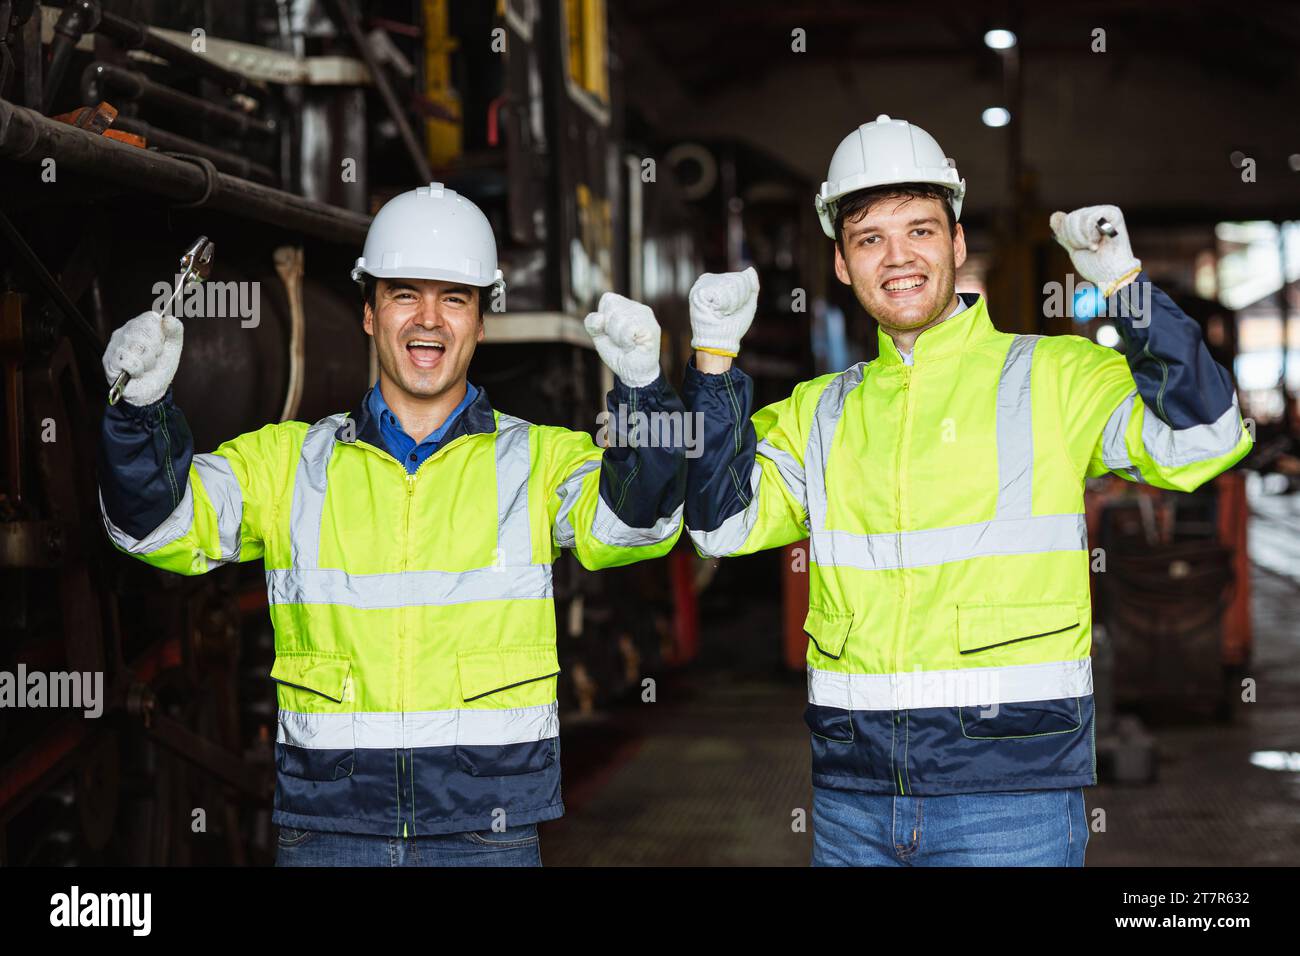 Felice allegro ingegnere meccanico di squadra che indossa indumenti di sicurezza riflettenti con elmetto e sorridere insieme Foto Stock